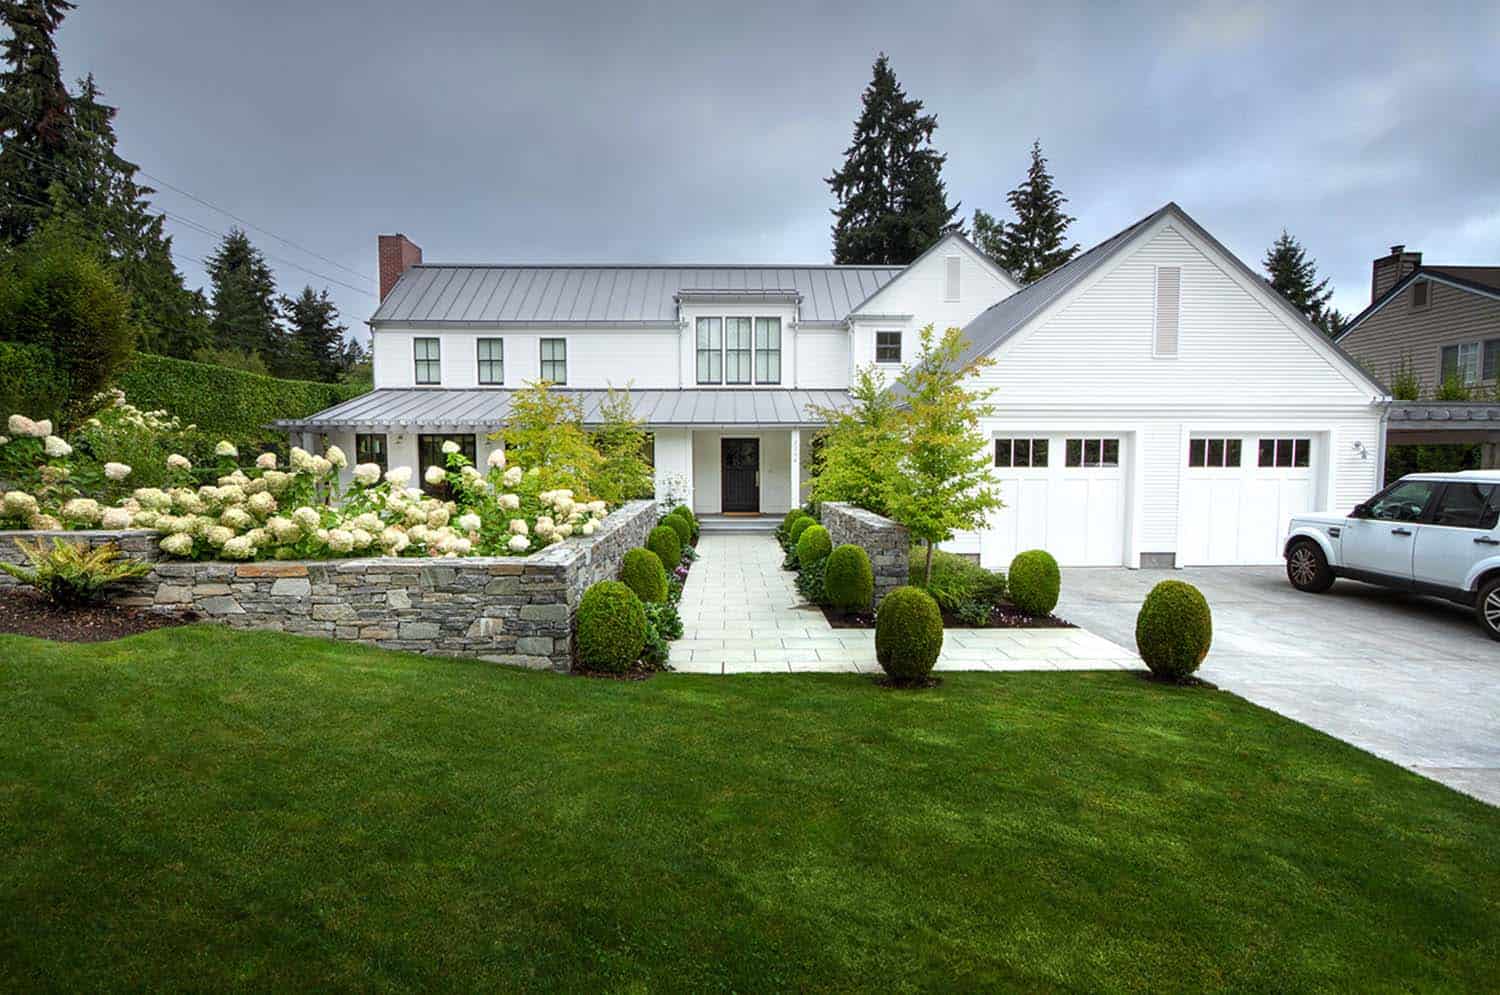 A gorgeous modern farmhouse style home in Washington